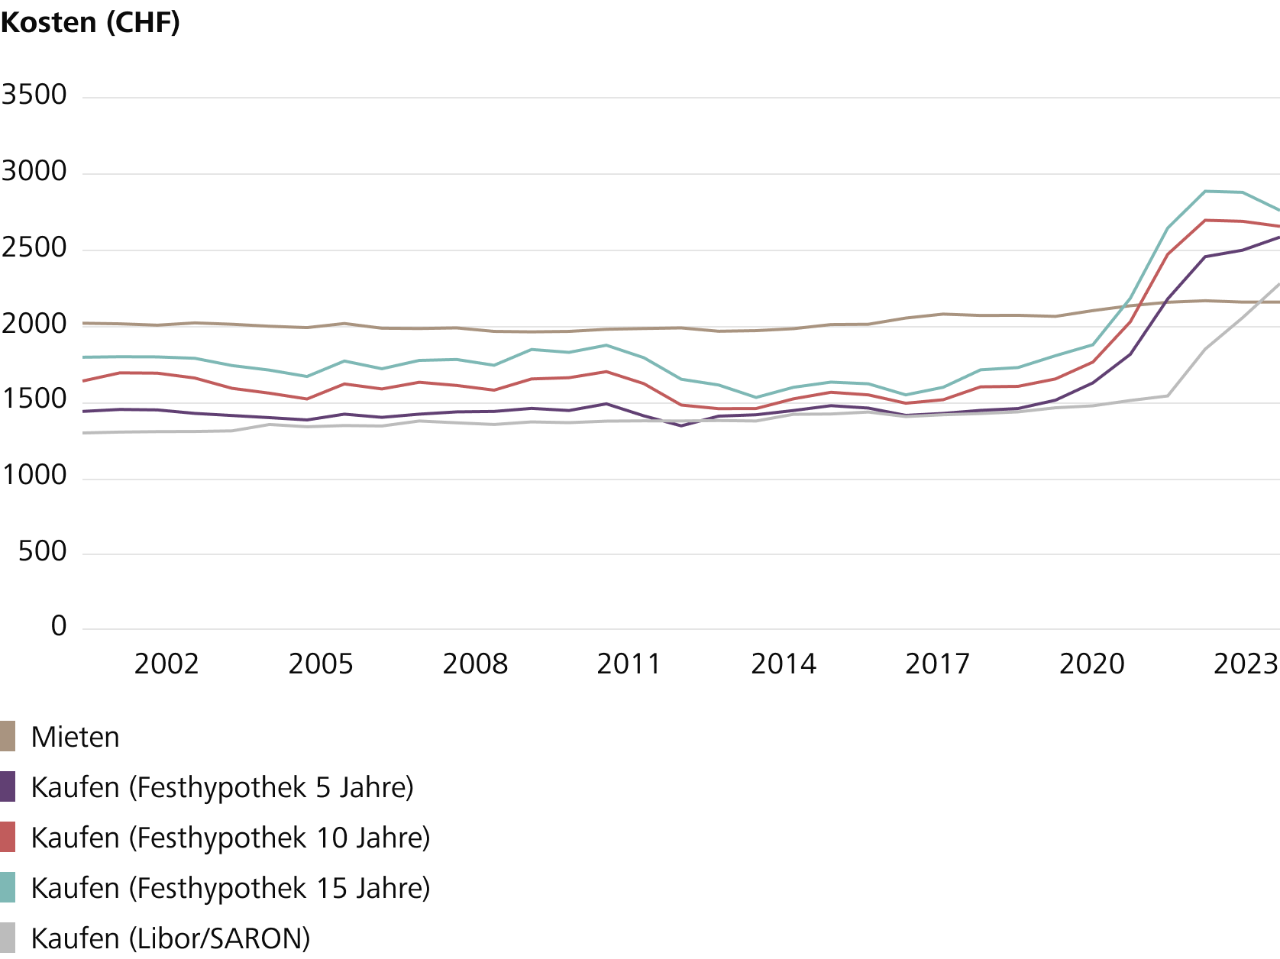 atistik-Übersicht von Mieten im Vergleich zu Kaufen von 2015 bis 2023 in der Schweiz